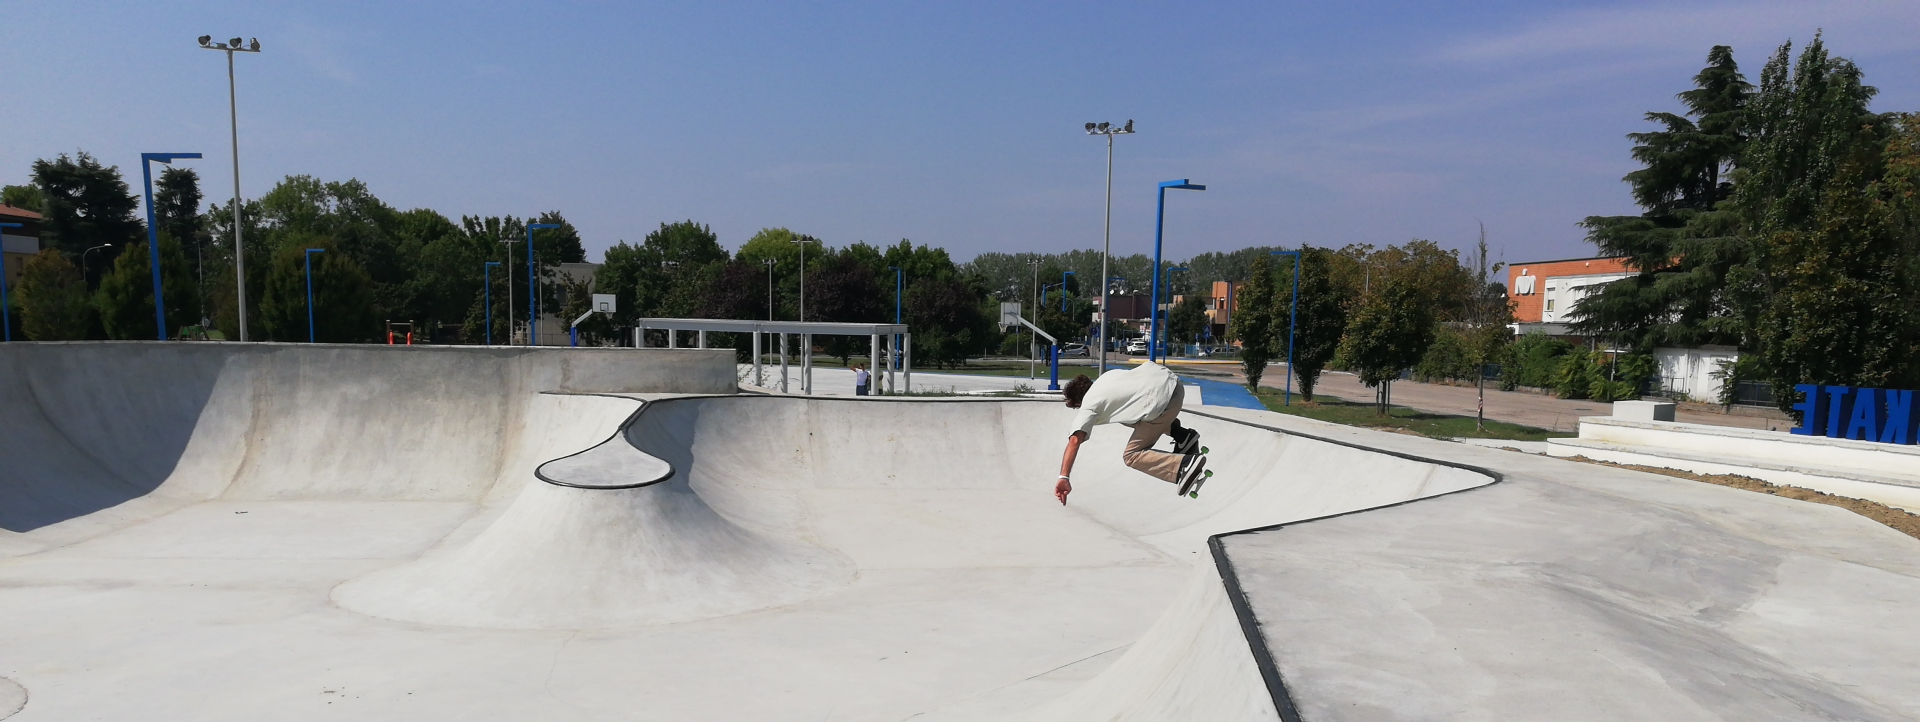 Skate Park al parco di Levante, pubblicato il bando